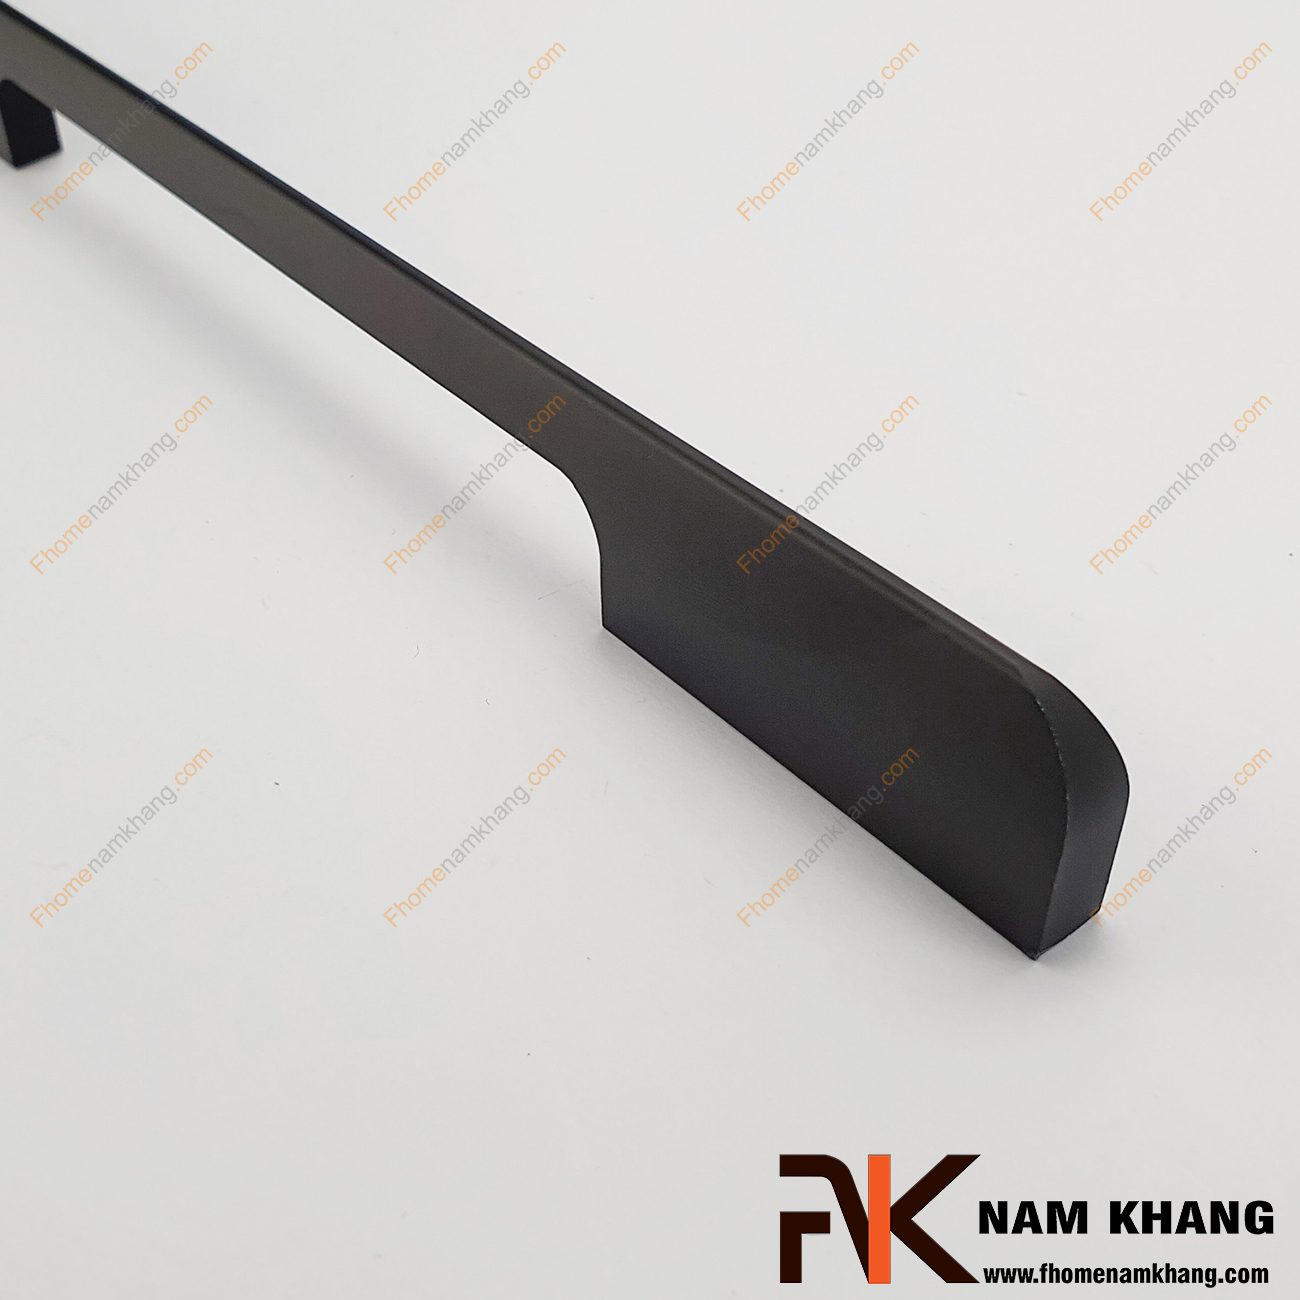 Tay cầm tủ màu đen dạng thanh dài NK170-D là thiết kế đặc biệt từ hợp kim cao cấp